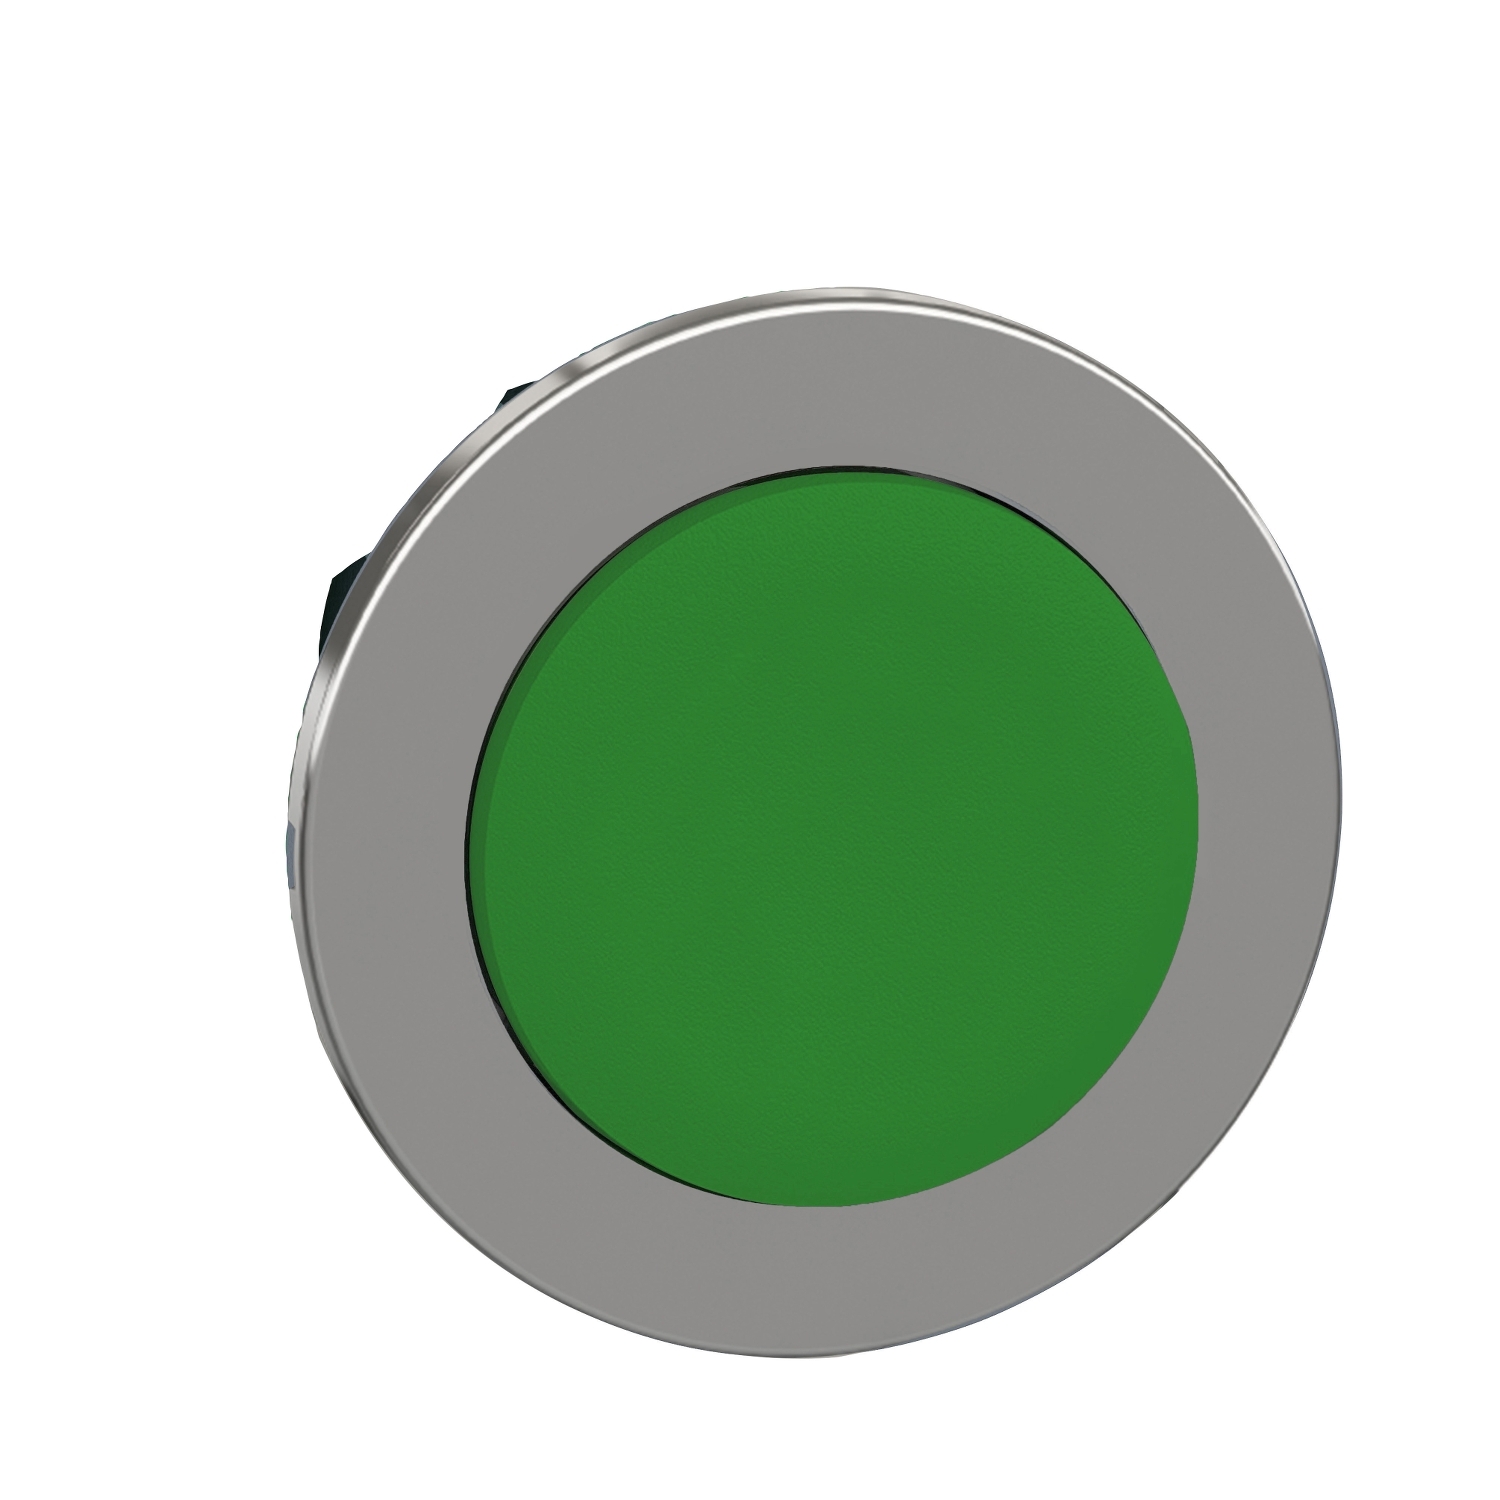 HARMONY panelbe süllyesztett fém nyomógomb fej O30 kiemelkedő zöld